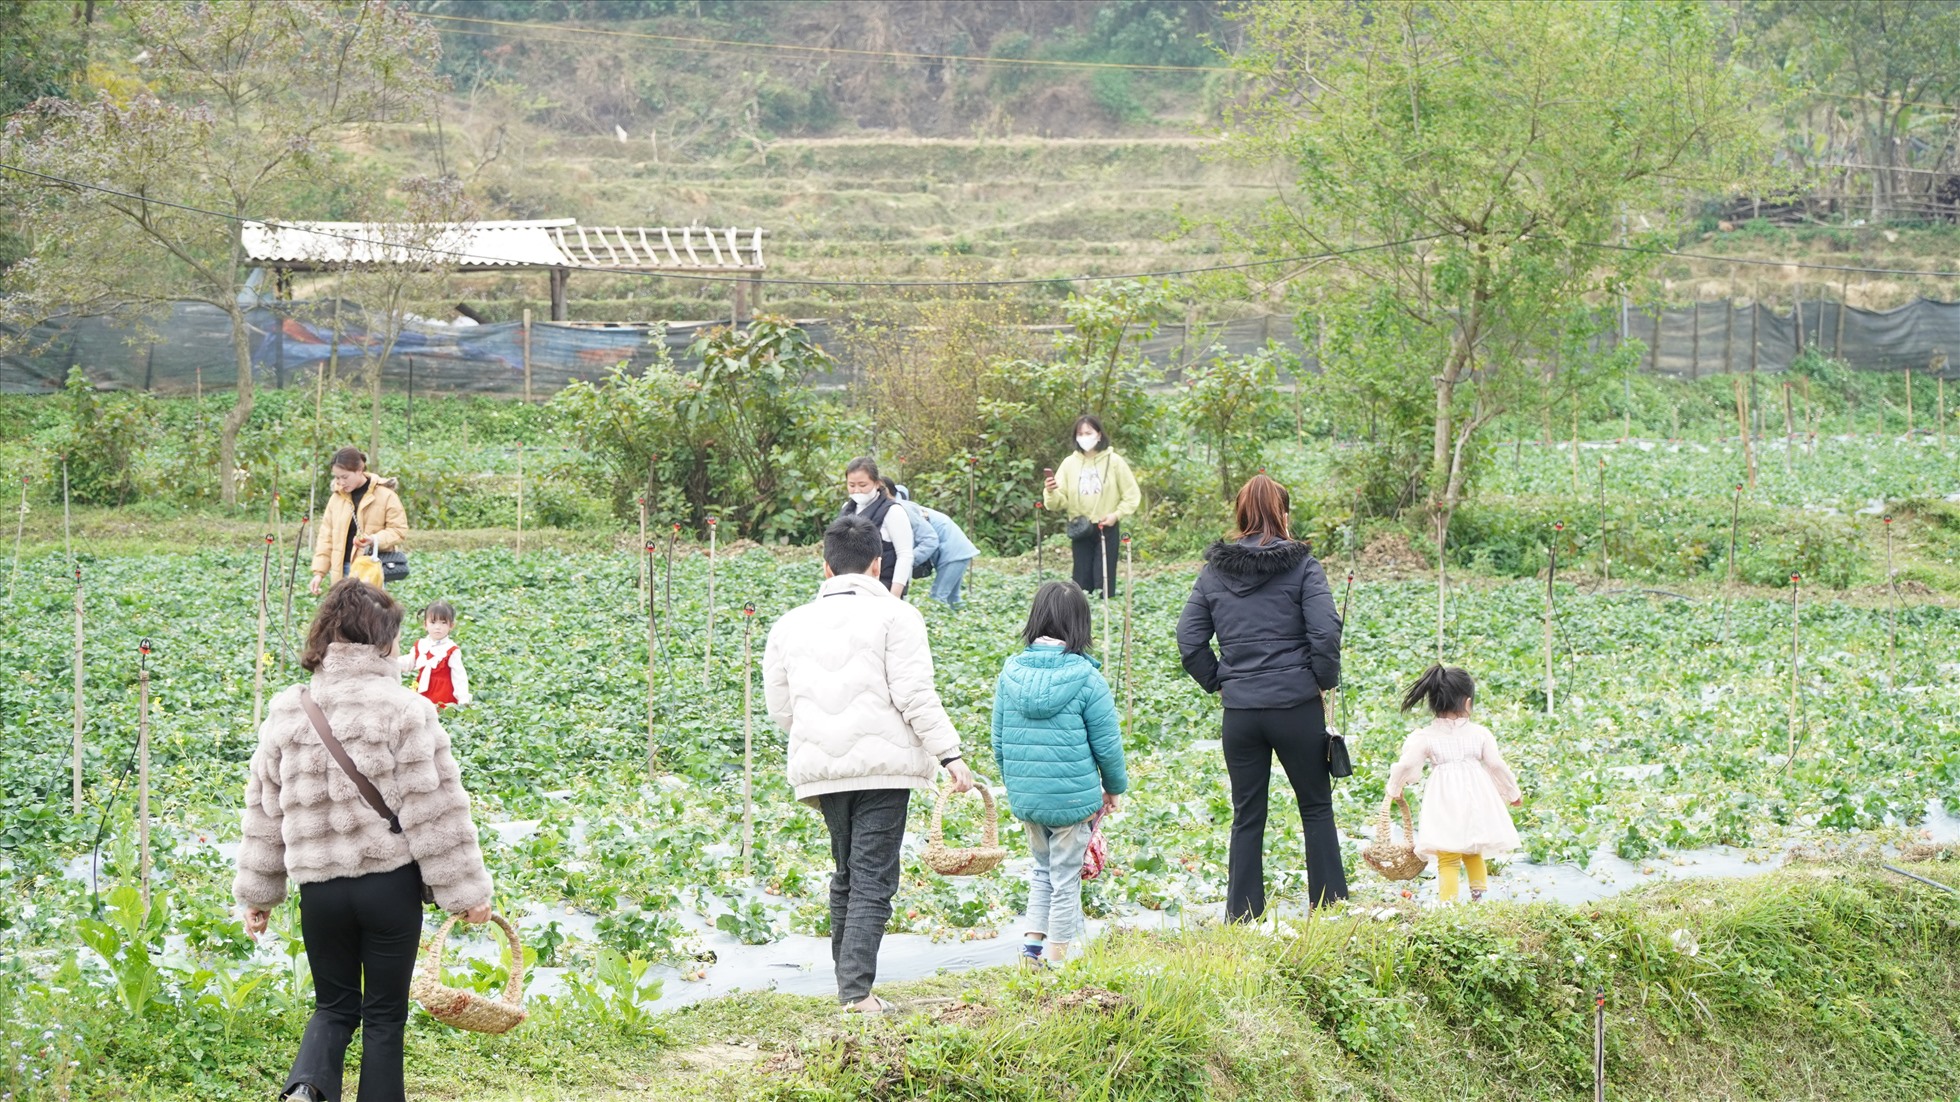 Nằm ở khu vực hồ Bản Chang (thôn Bản Đăm, xã Đức Vân, huyện Ngân Sơn), vườn dâu tây rộng 8.000m2 của nhóm thanh niên xuất ngũ trở thành nơi trải nghiệm, tận hưởng bầu không khí trong lành của nhiều người.